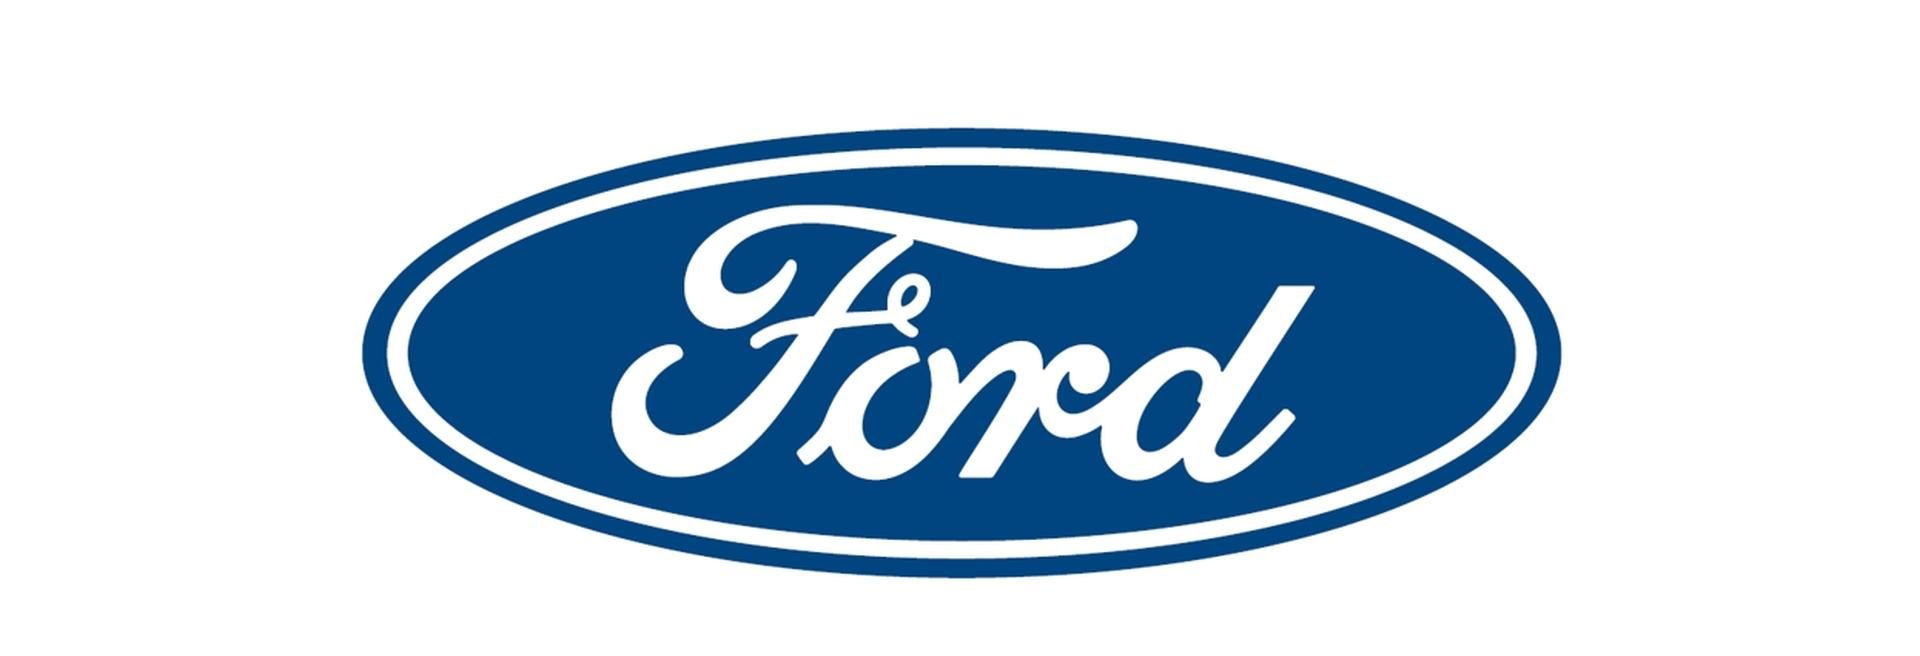 Biatorbágyon nyitotta első európai regionális alkatrész központját a Ford - VIDEÓRIPORT